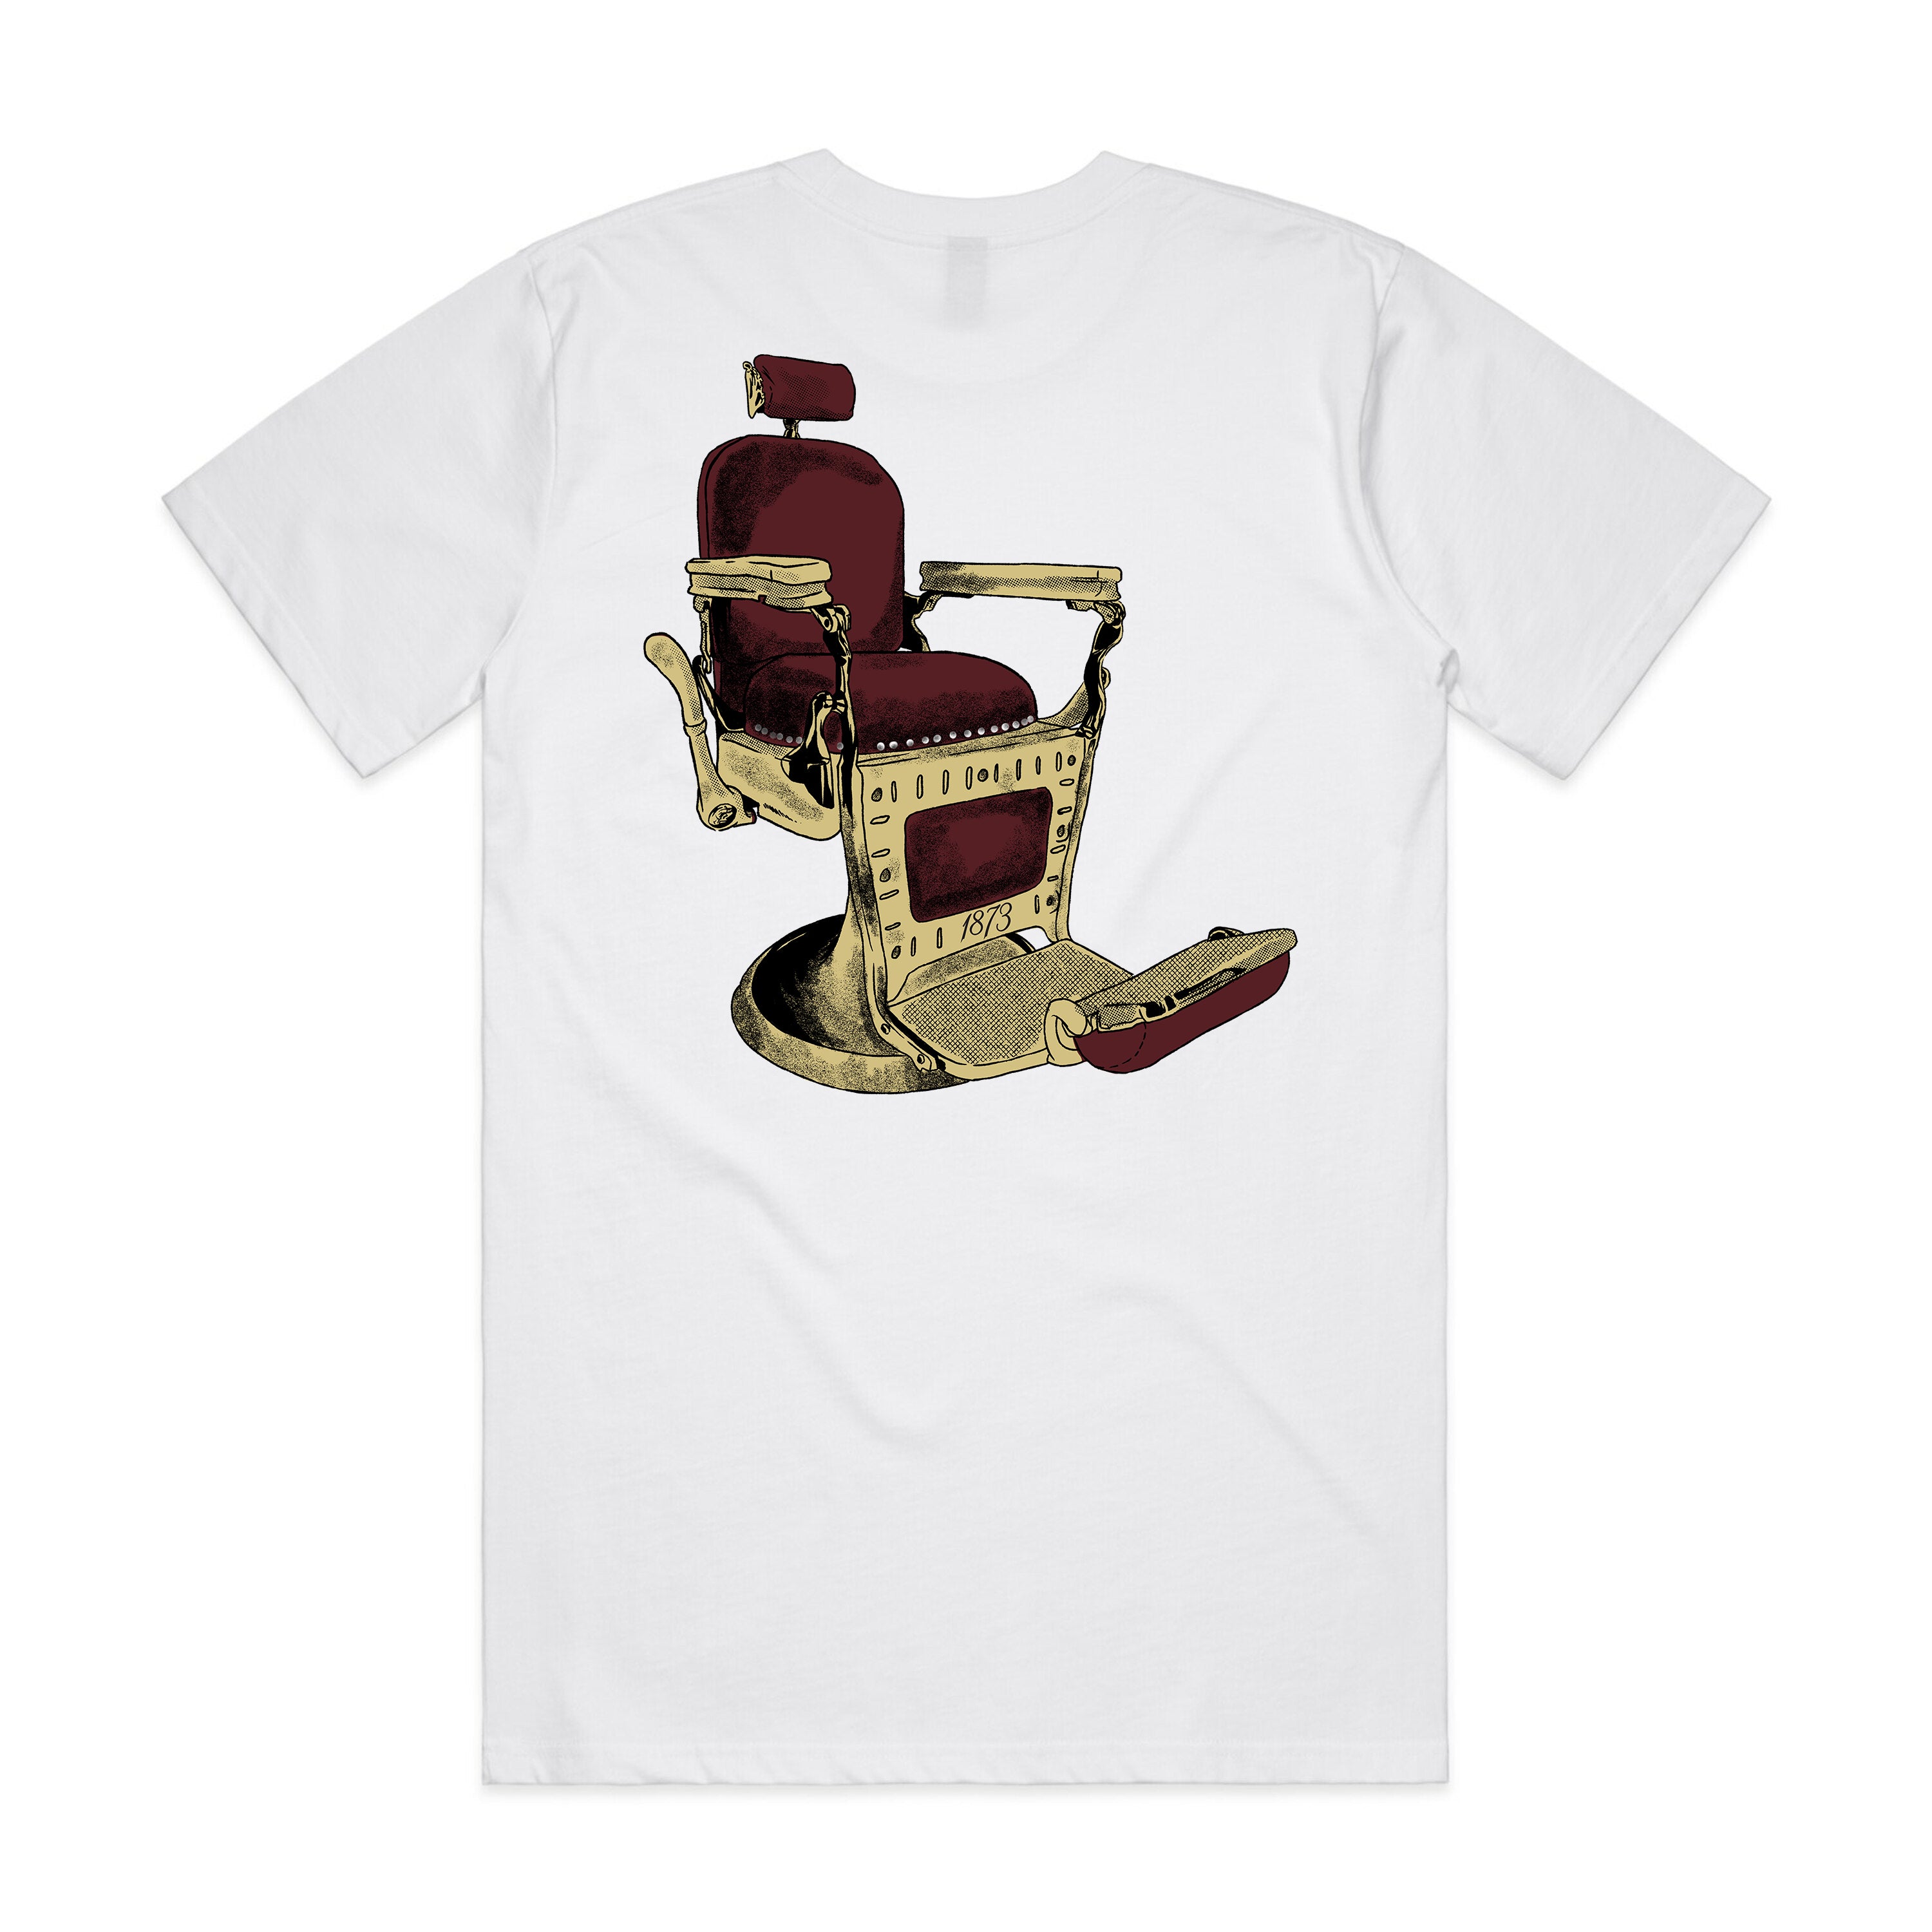 La Silla de Barbero (T-Shirt)